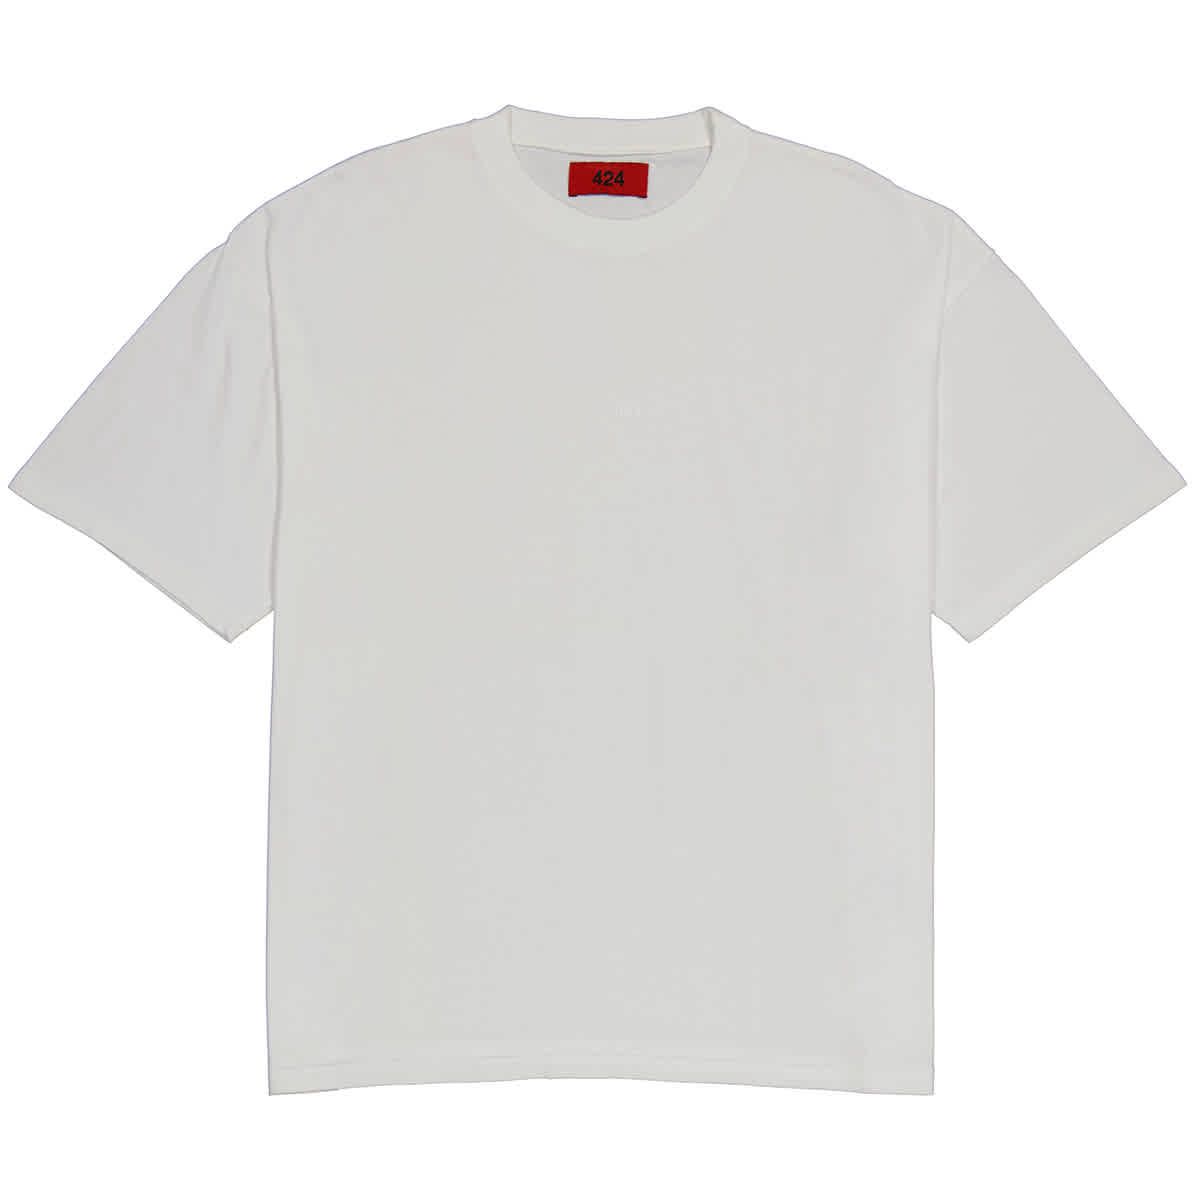 424 Mens Off White Logo Crew T-shirt, Size Small | Jomashop.com & JomaDeals.com